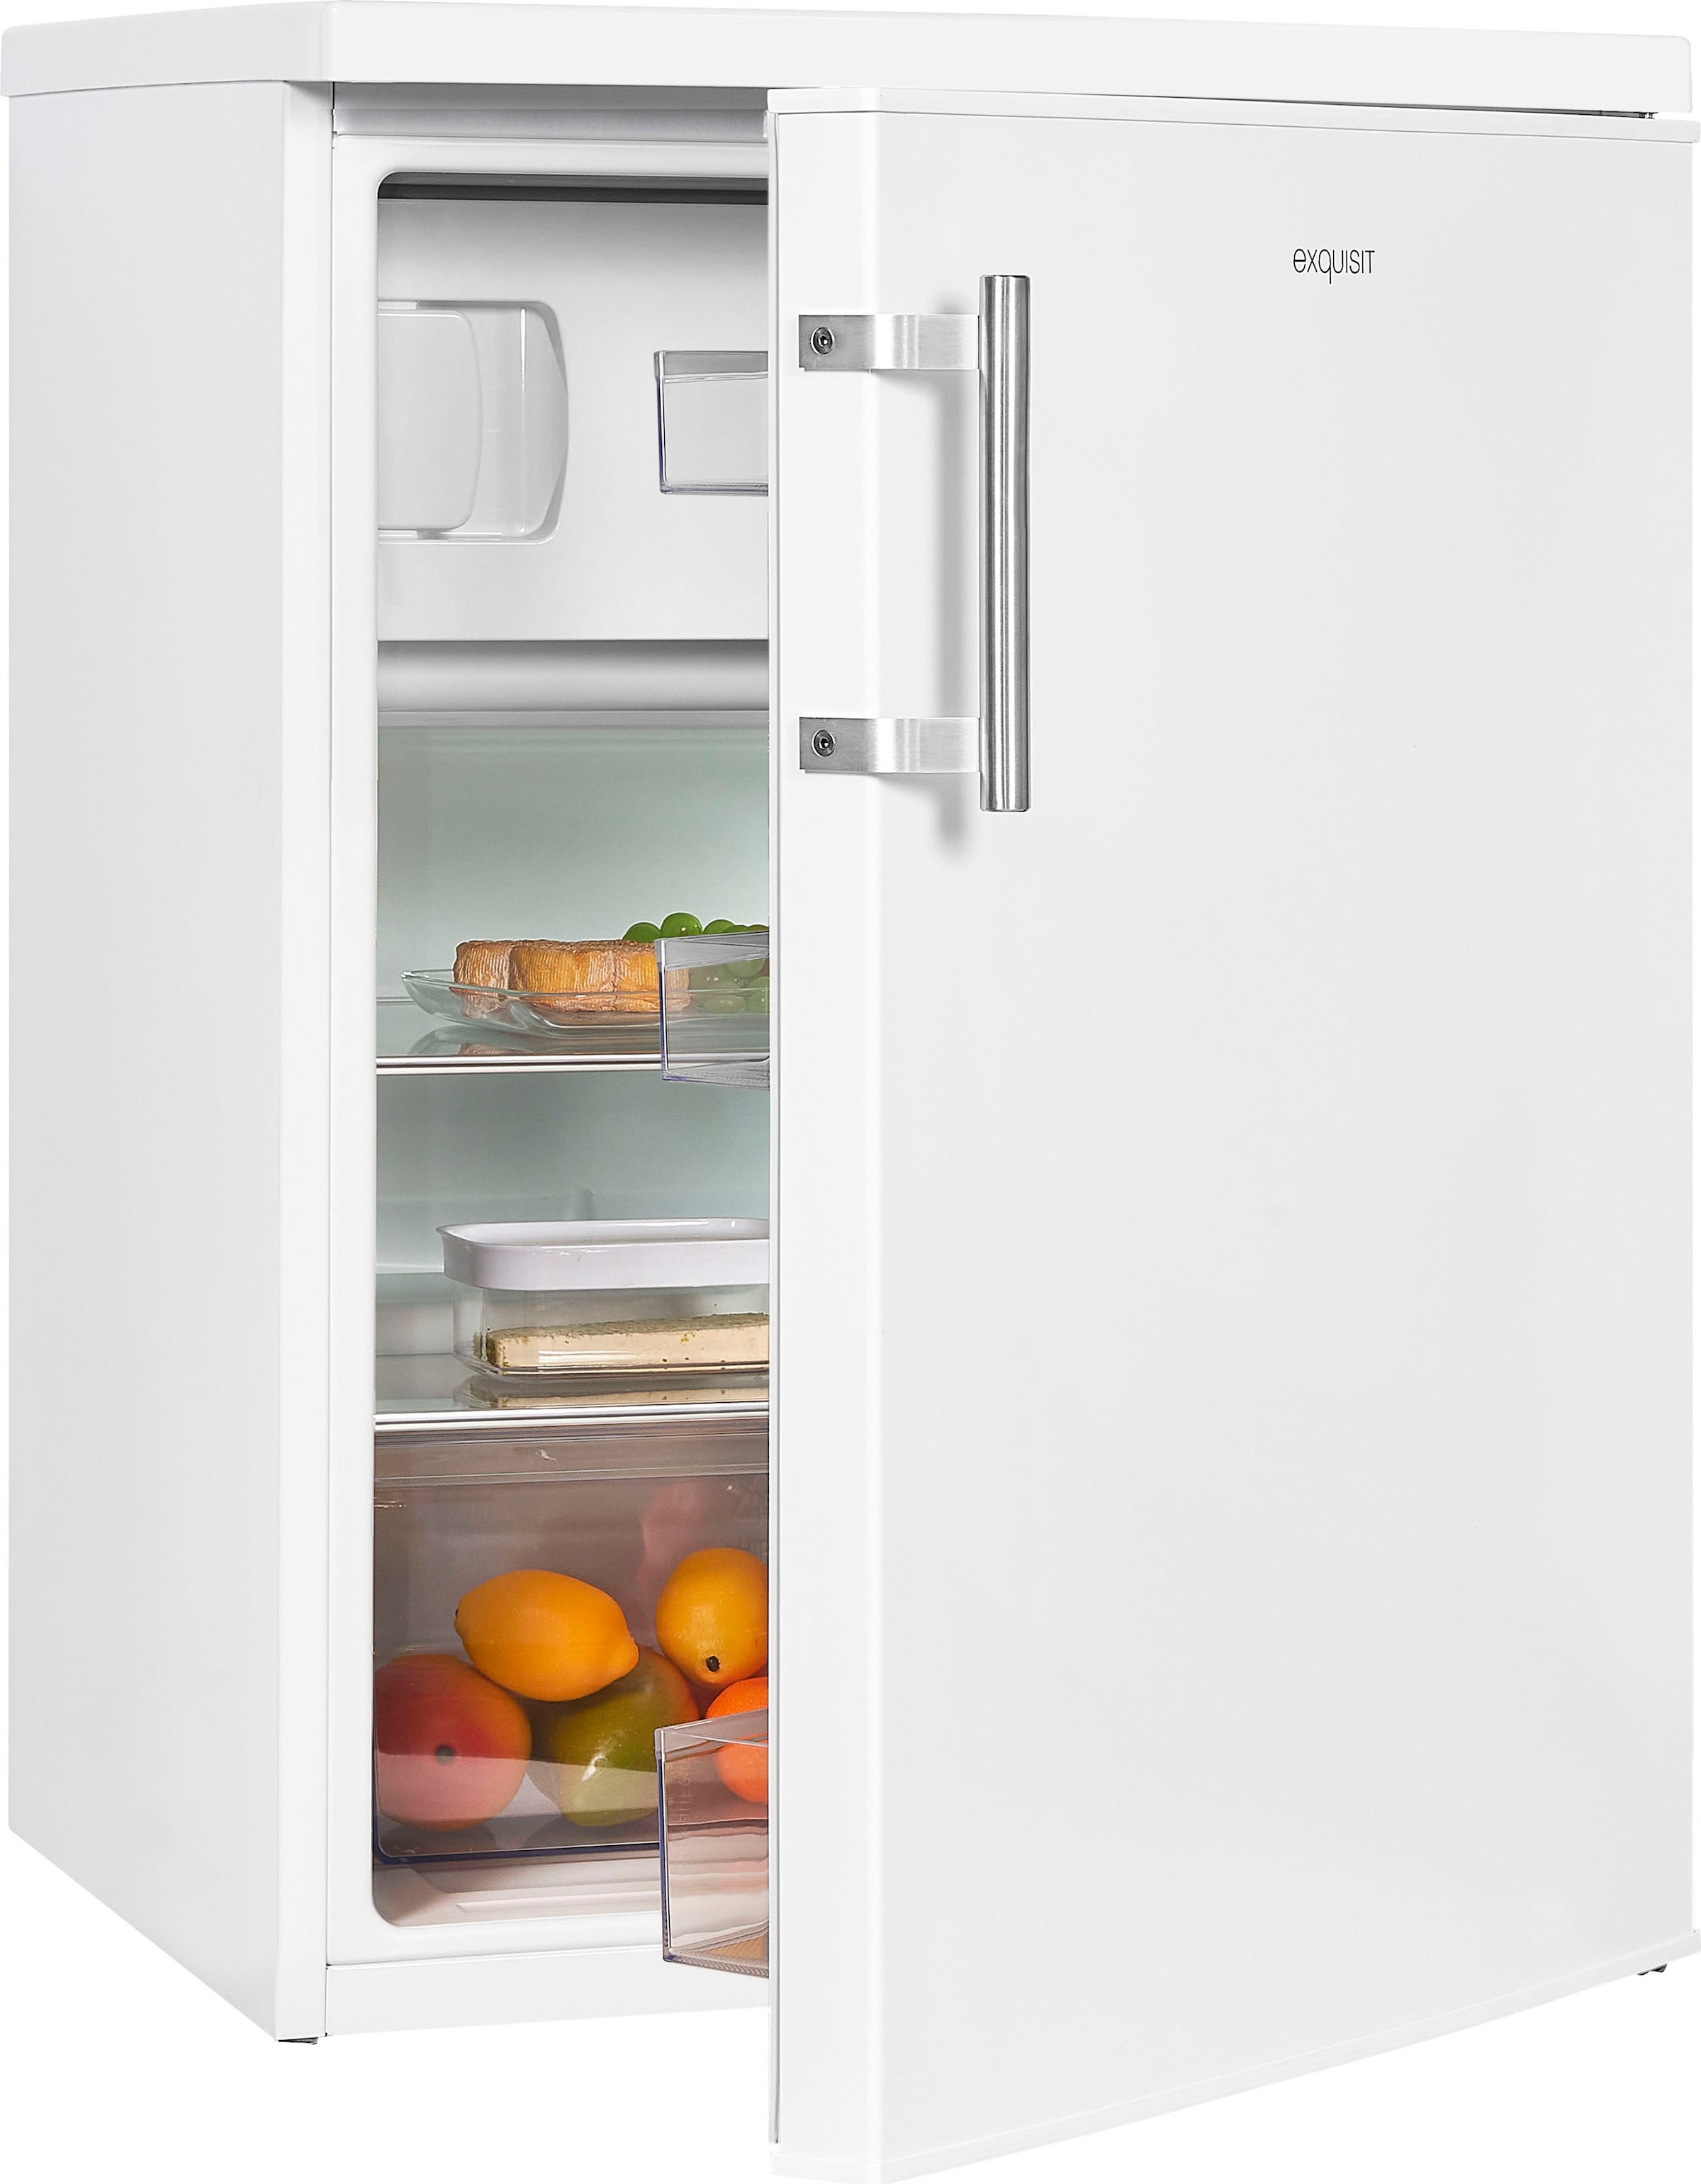 Exquisit Kühlschränke bequem OTTO bei